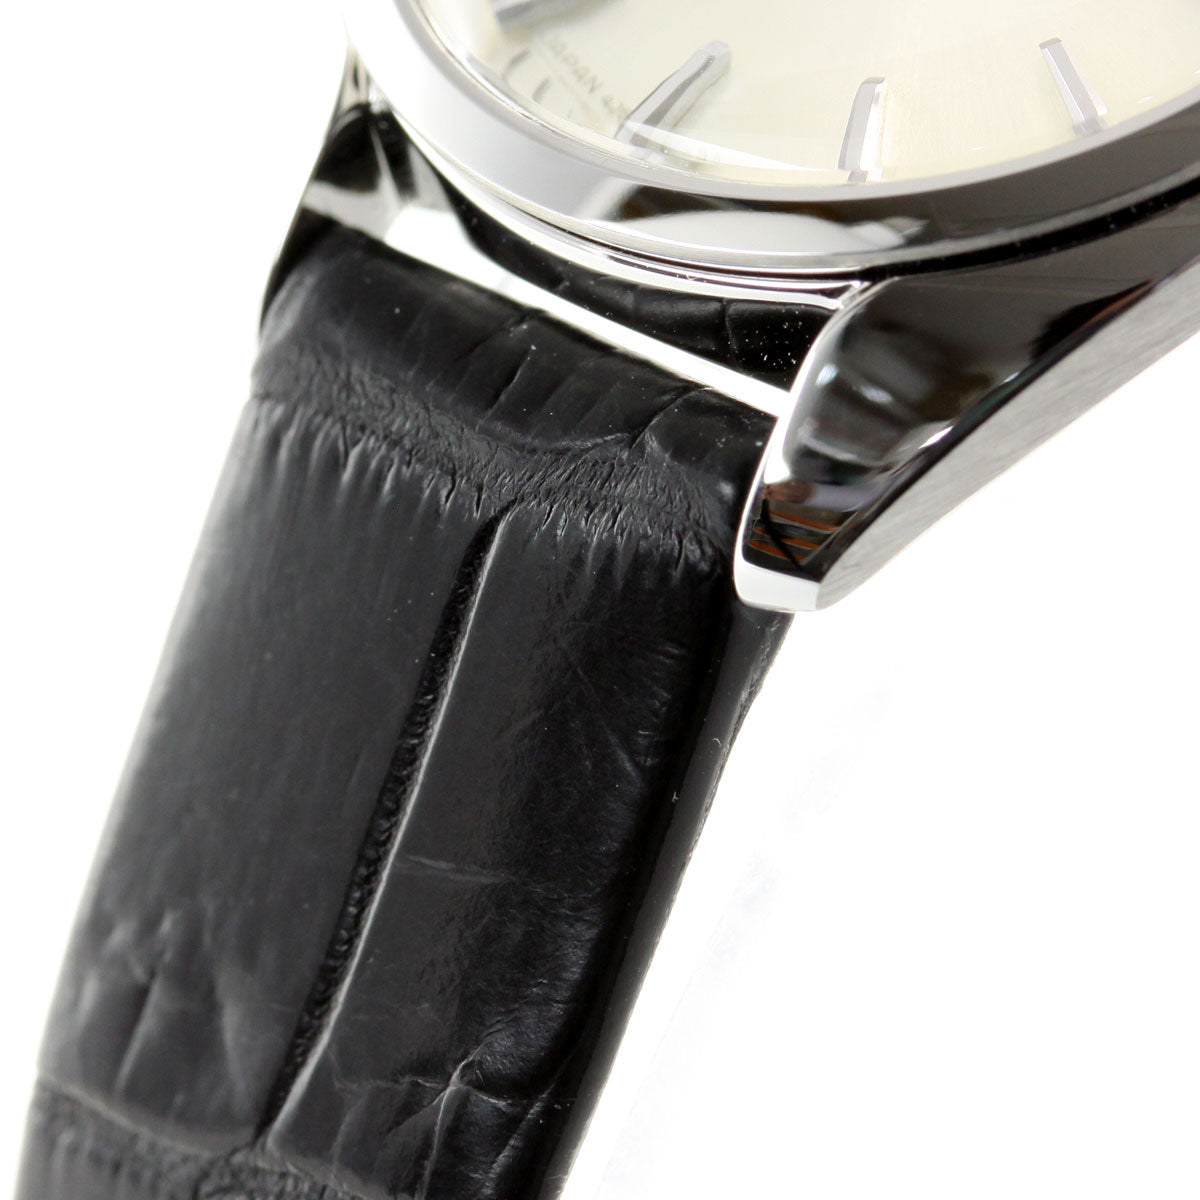 【36回分割手数料無料！】グランドセイコー GRAND SEIKO 腕時計 ペアモデル レディース 革ベルト エレガンス Elegance Collection STGF337【正規品】